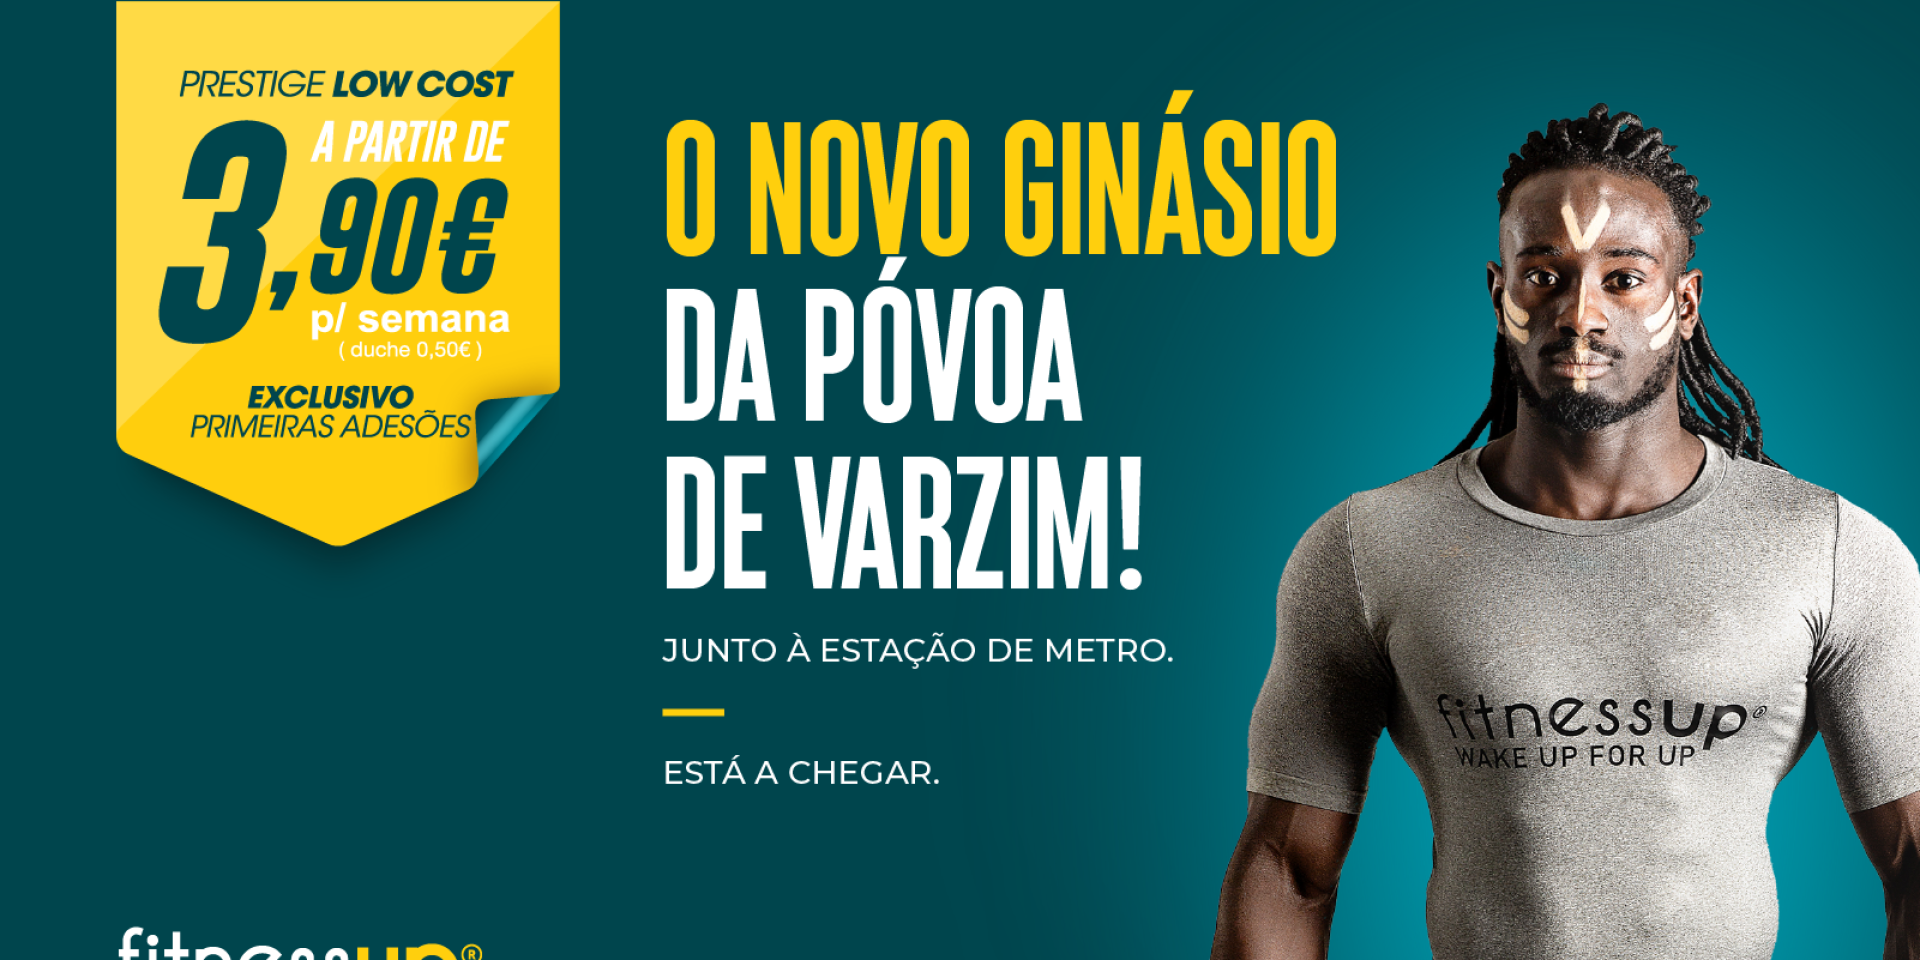 Fitness UP Abre Novo Espaço na Póvoa de Varzim!